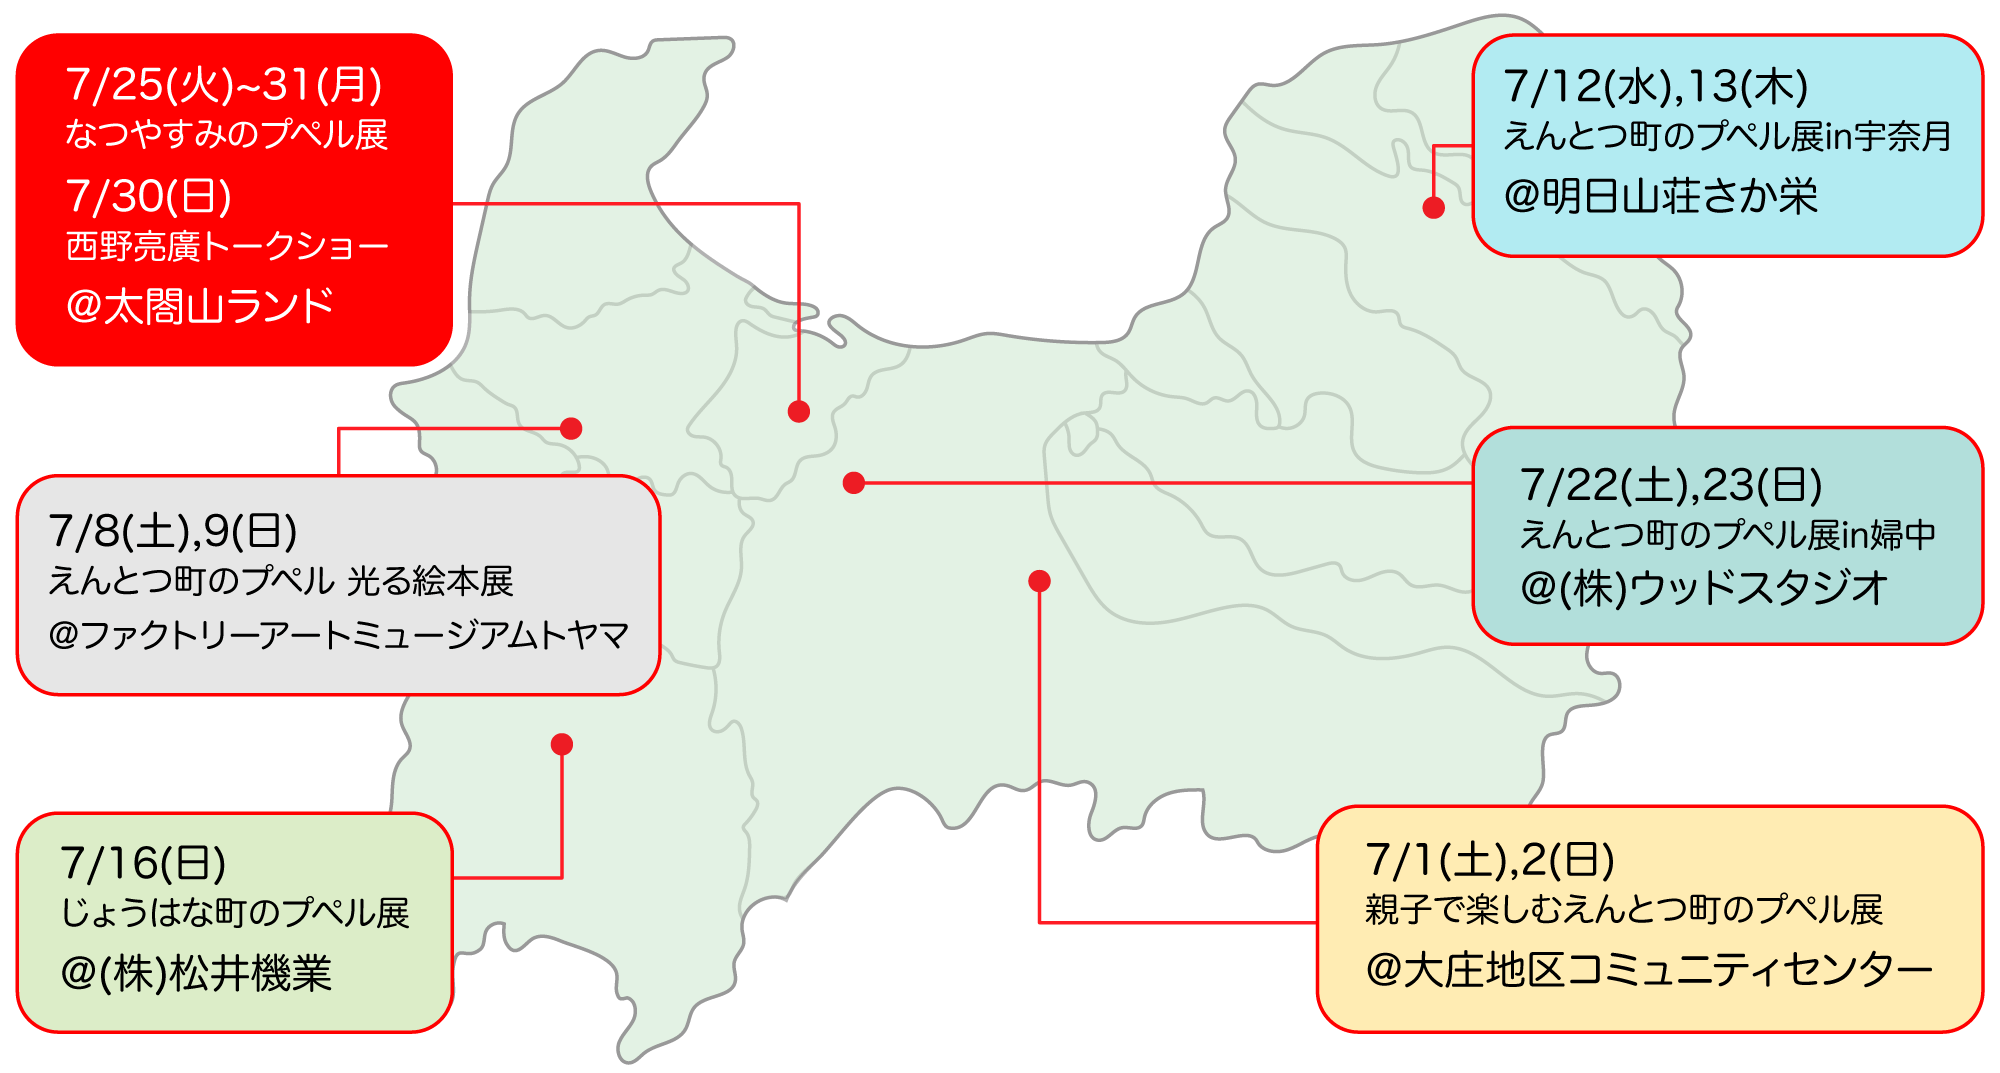 えんとつ町のプペル展in富山のスケジュールマップ